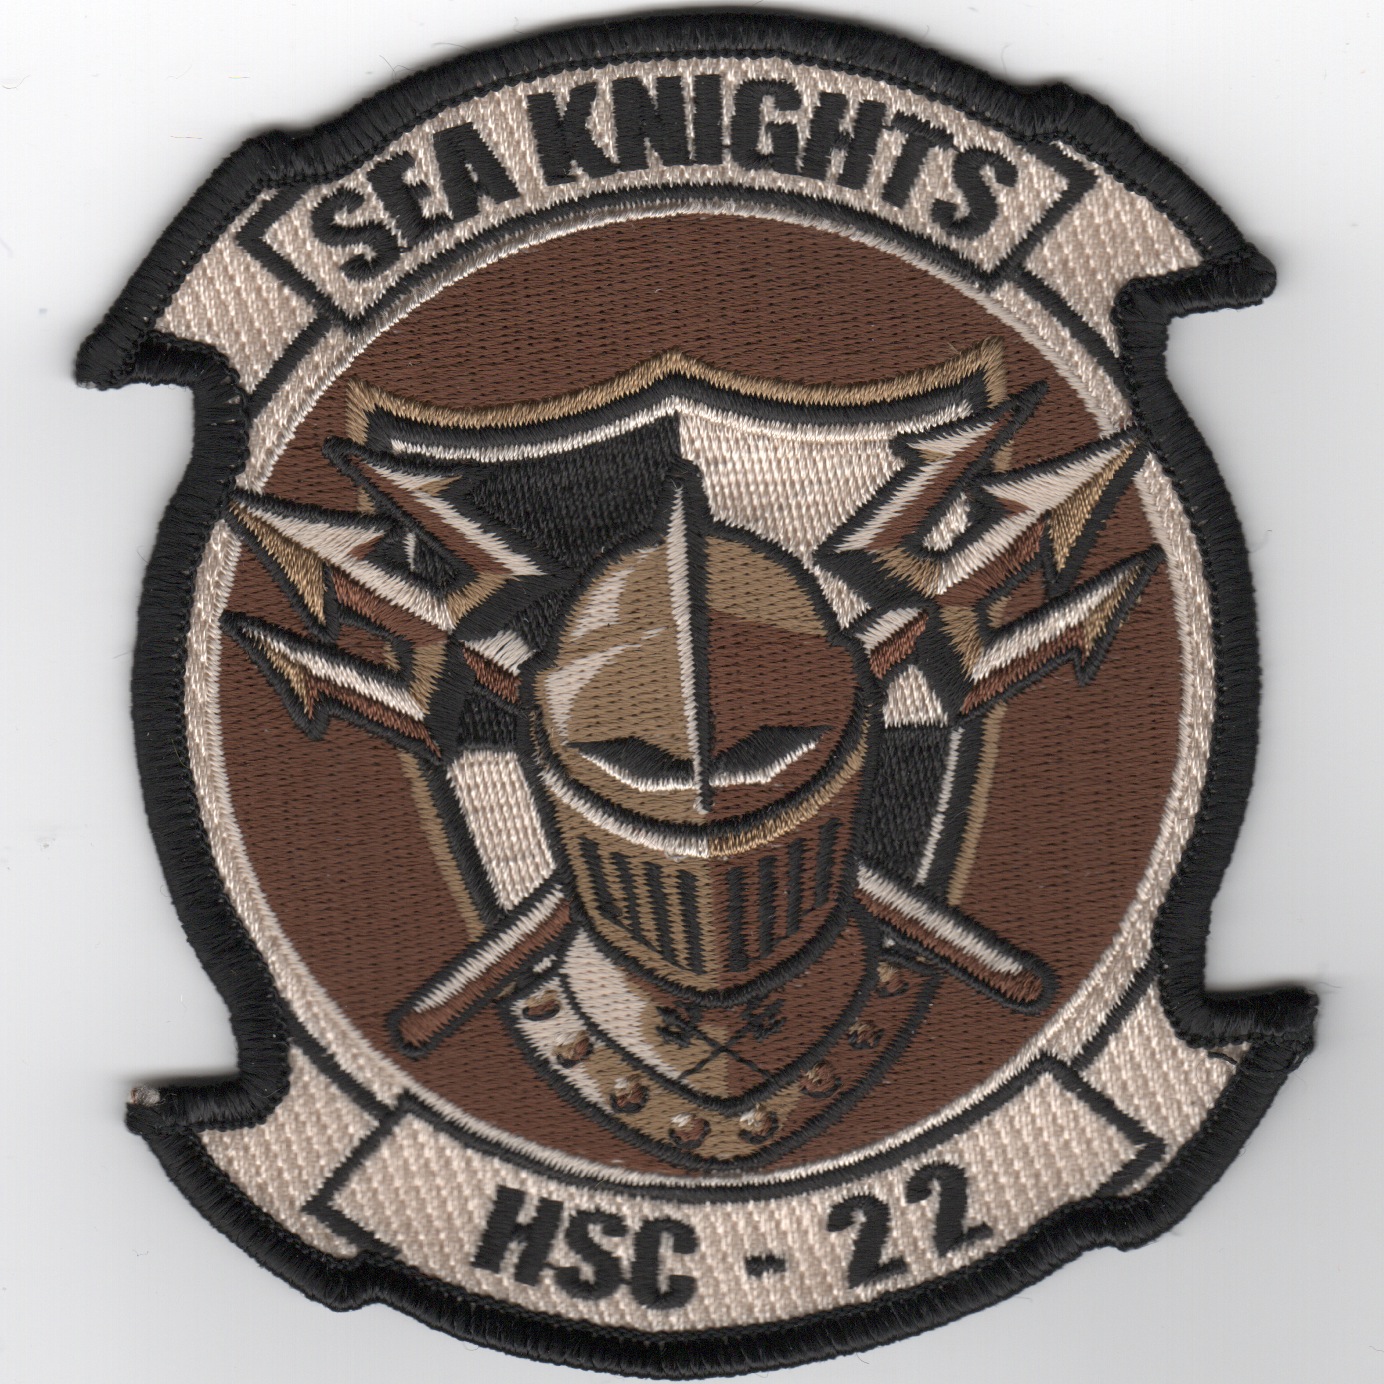 HSC-22 Squadron Patch (Des)